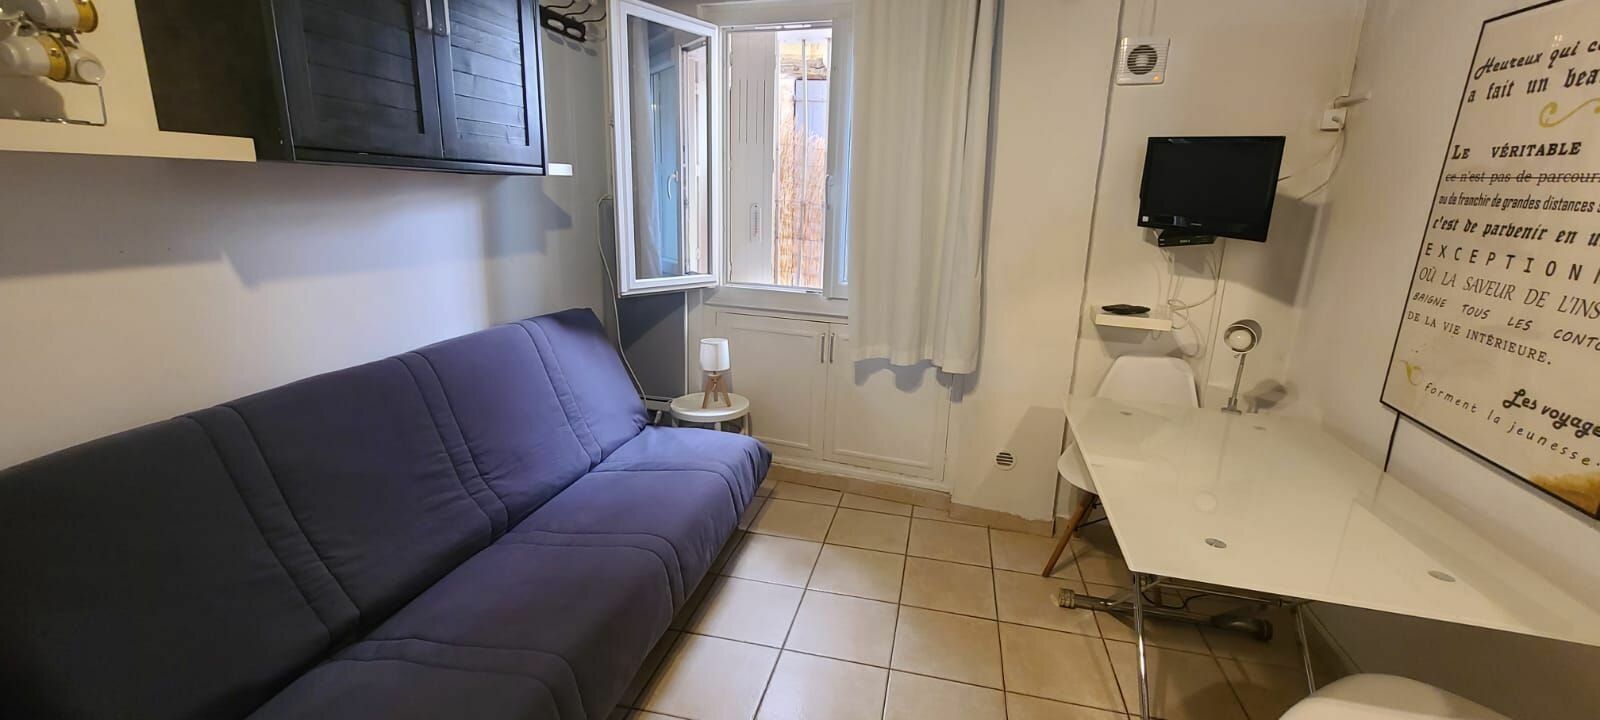 Appartement à vendre 1 15.67m2 à Aix-en-Provence vignette-4